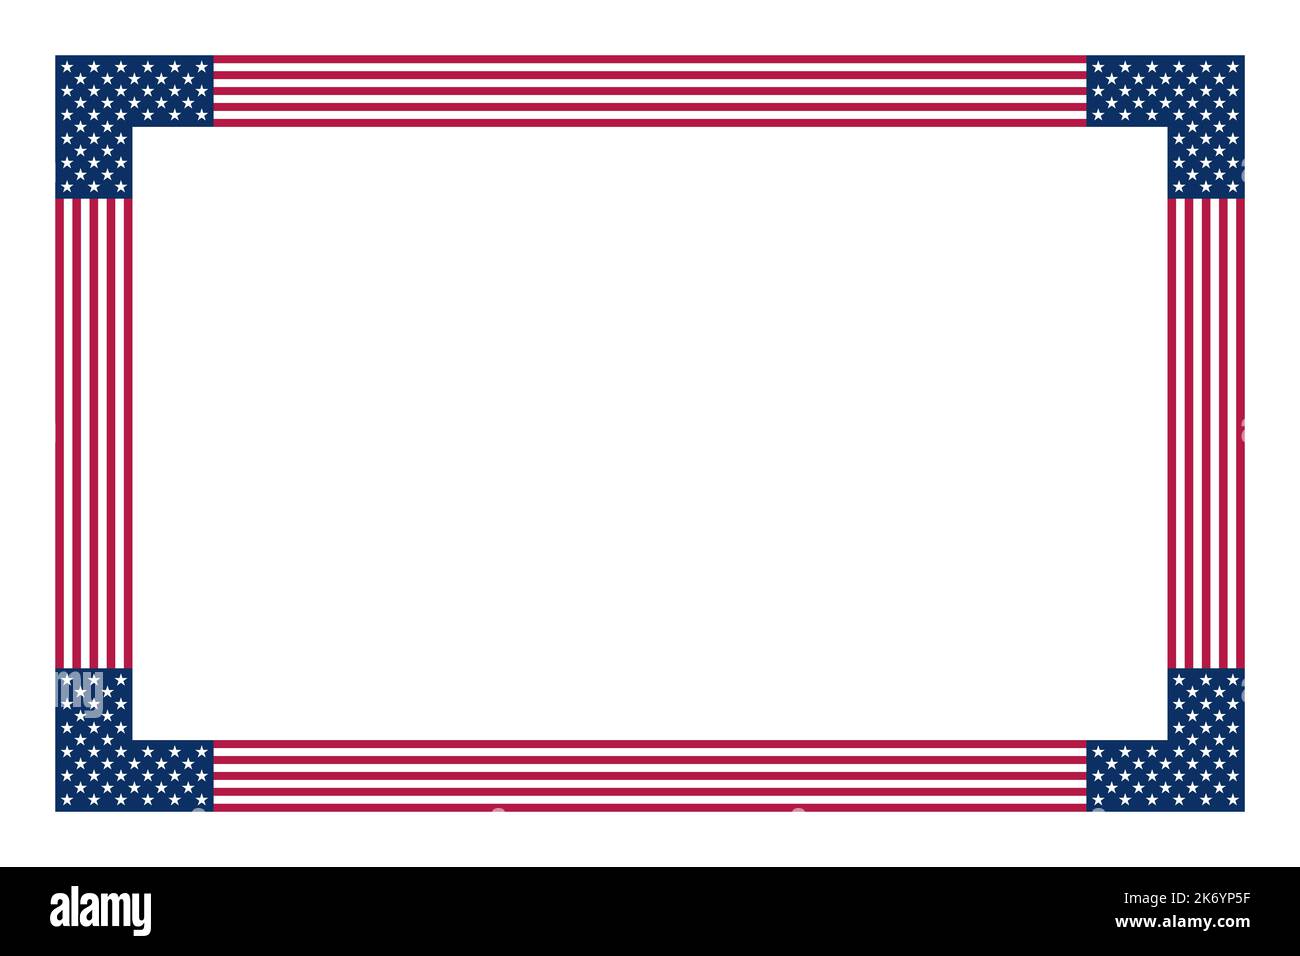 Motivo bandiera americana, cornice rettangolare. Bordo fatto con stelle e strisce modello, basato sulla bandiera nazionale degli Stati Uniti. Foto Stock